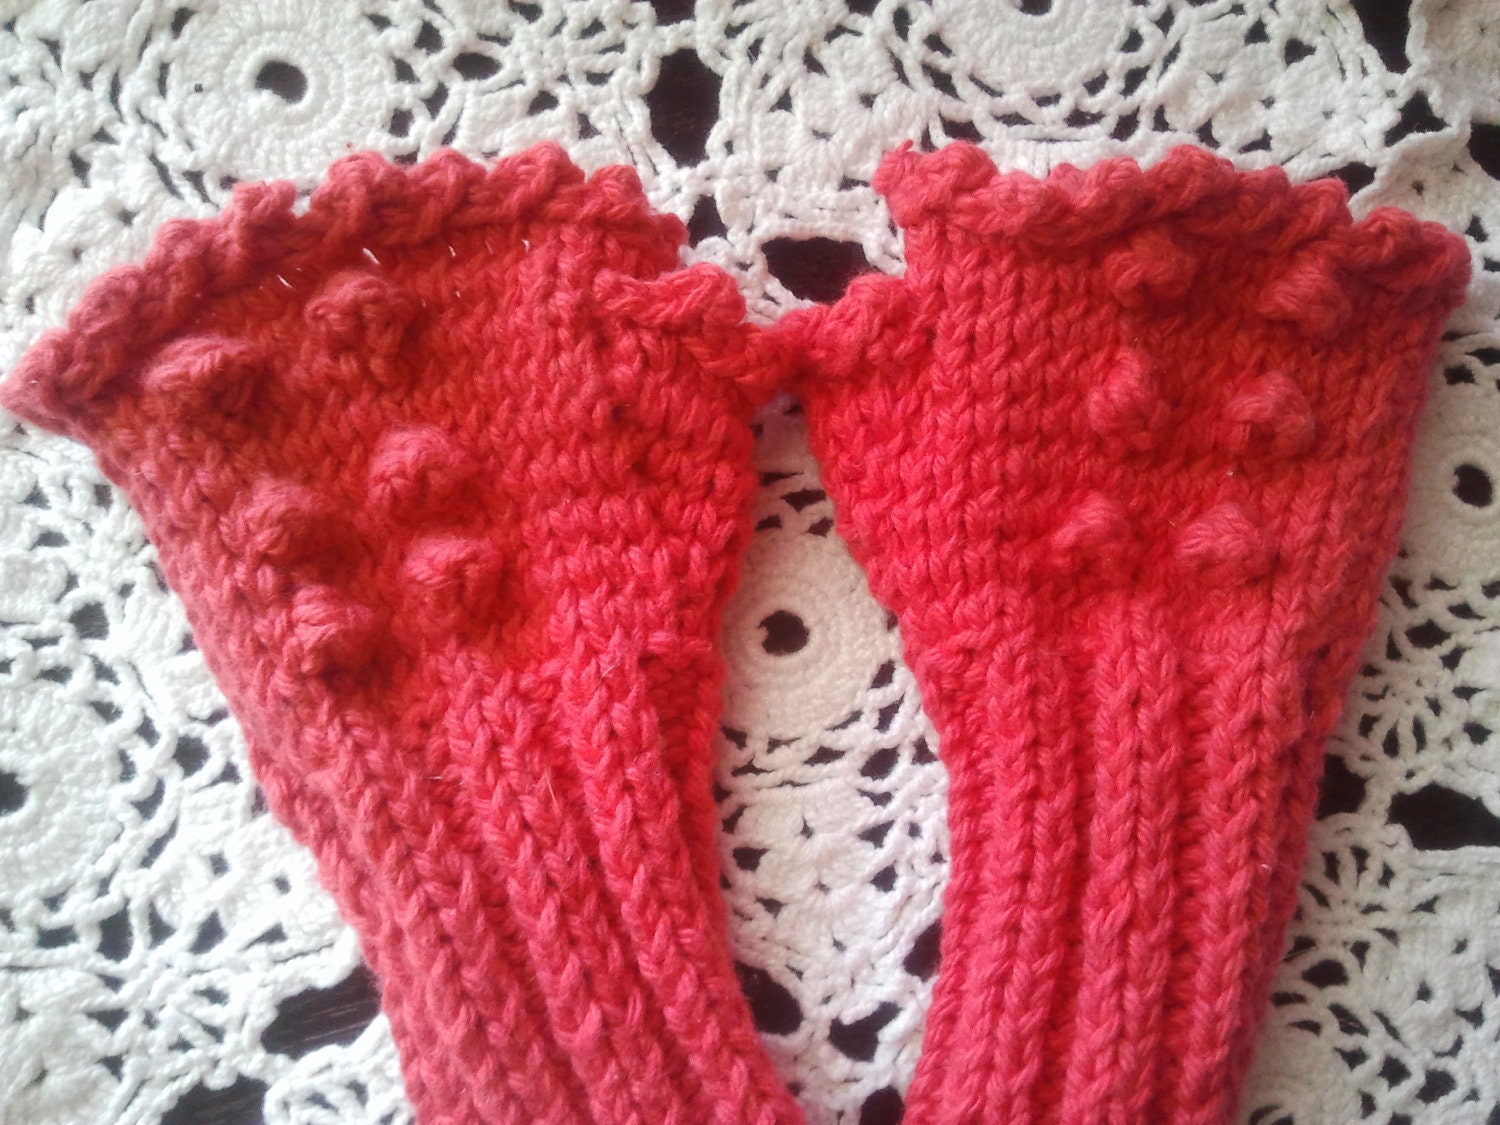 Fingerless Knitted Cotton Gloves - Girls sizes 2-4